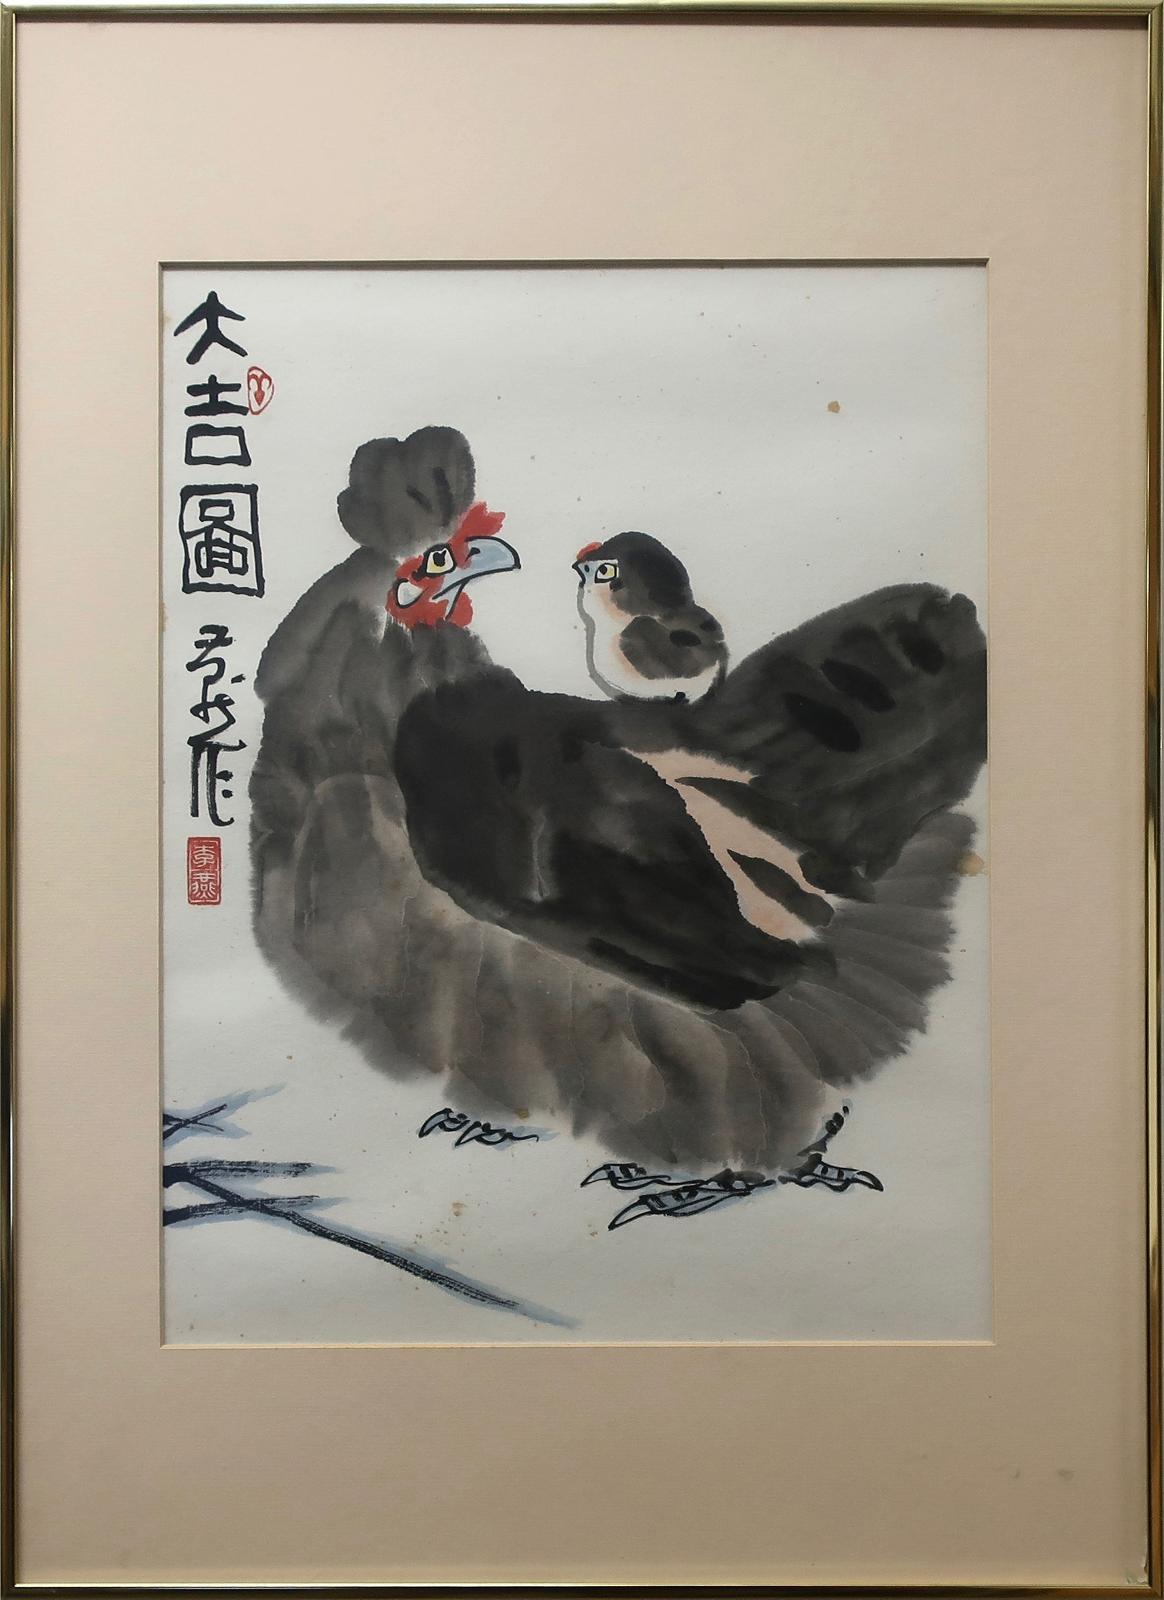 Li Yan (1943) - Hen and Chick